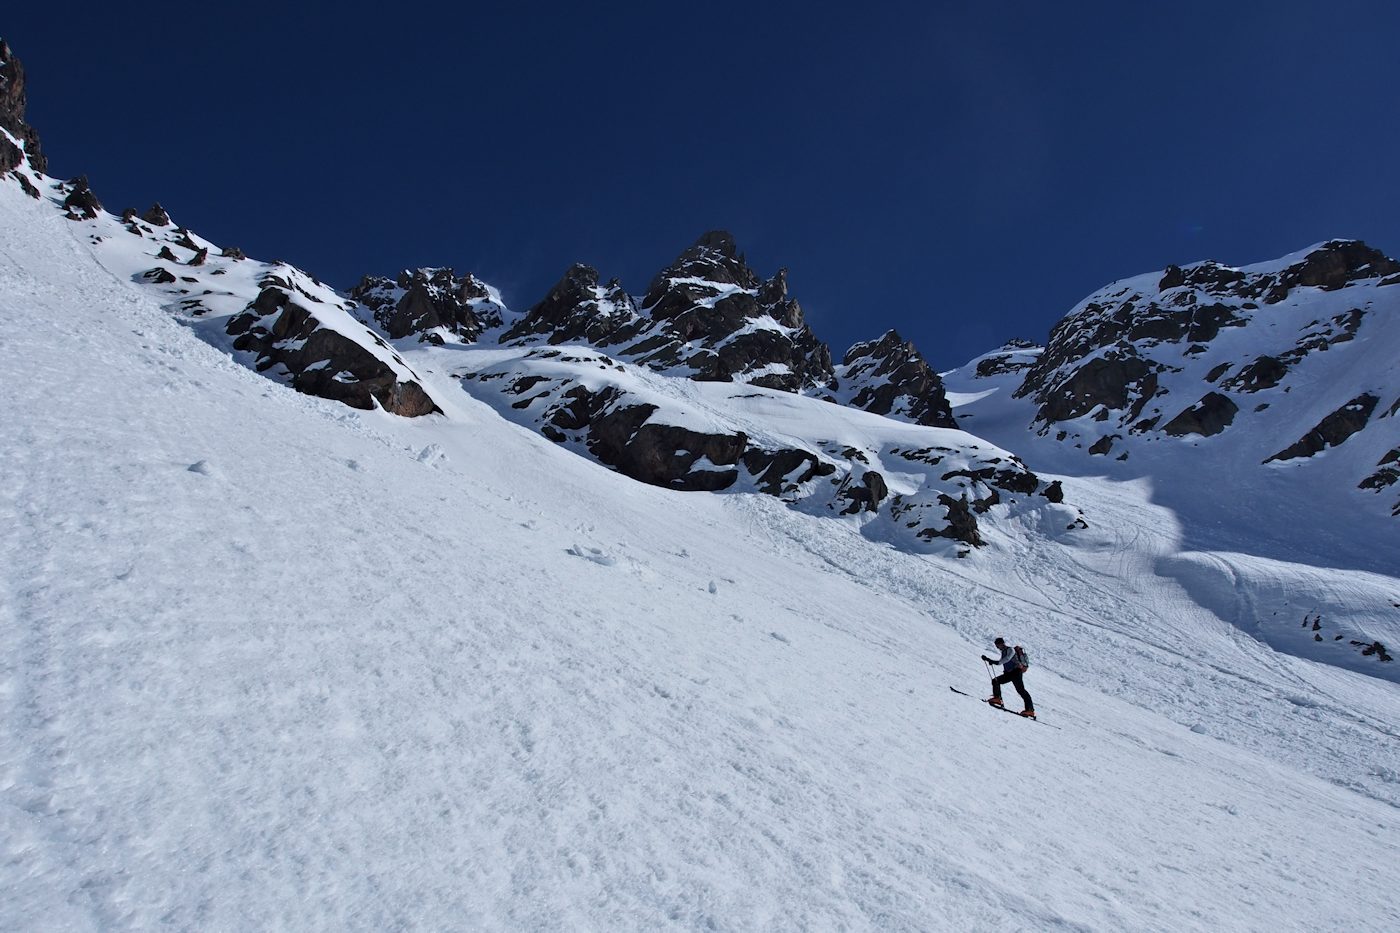 Les derniers mètre à ski : Avant que la pente ne se redresse.